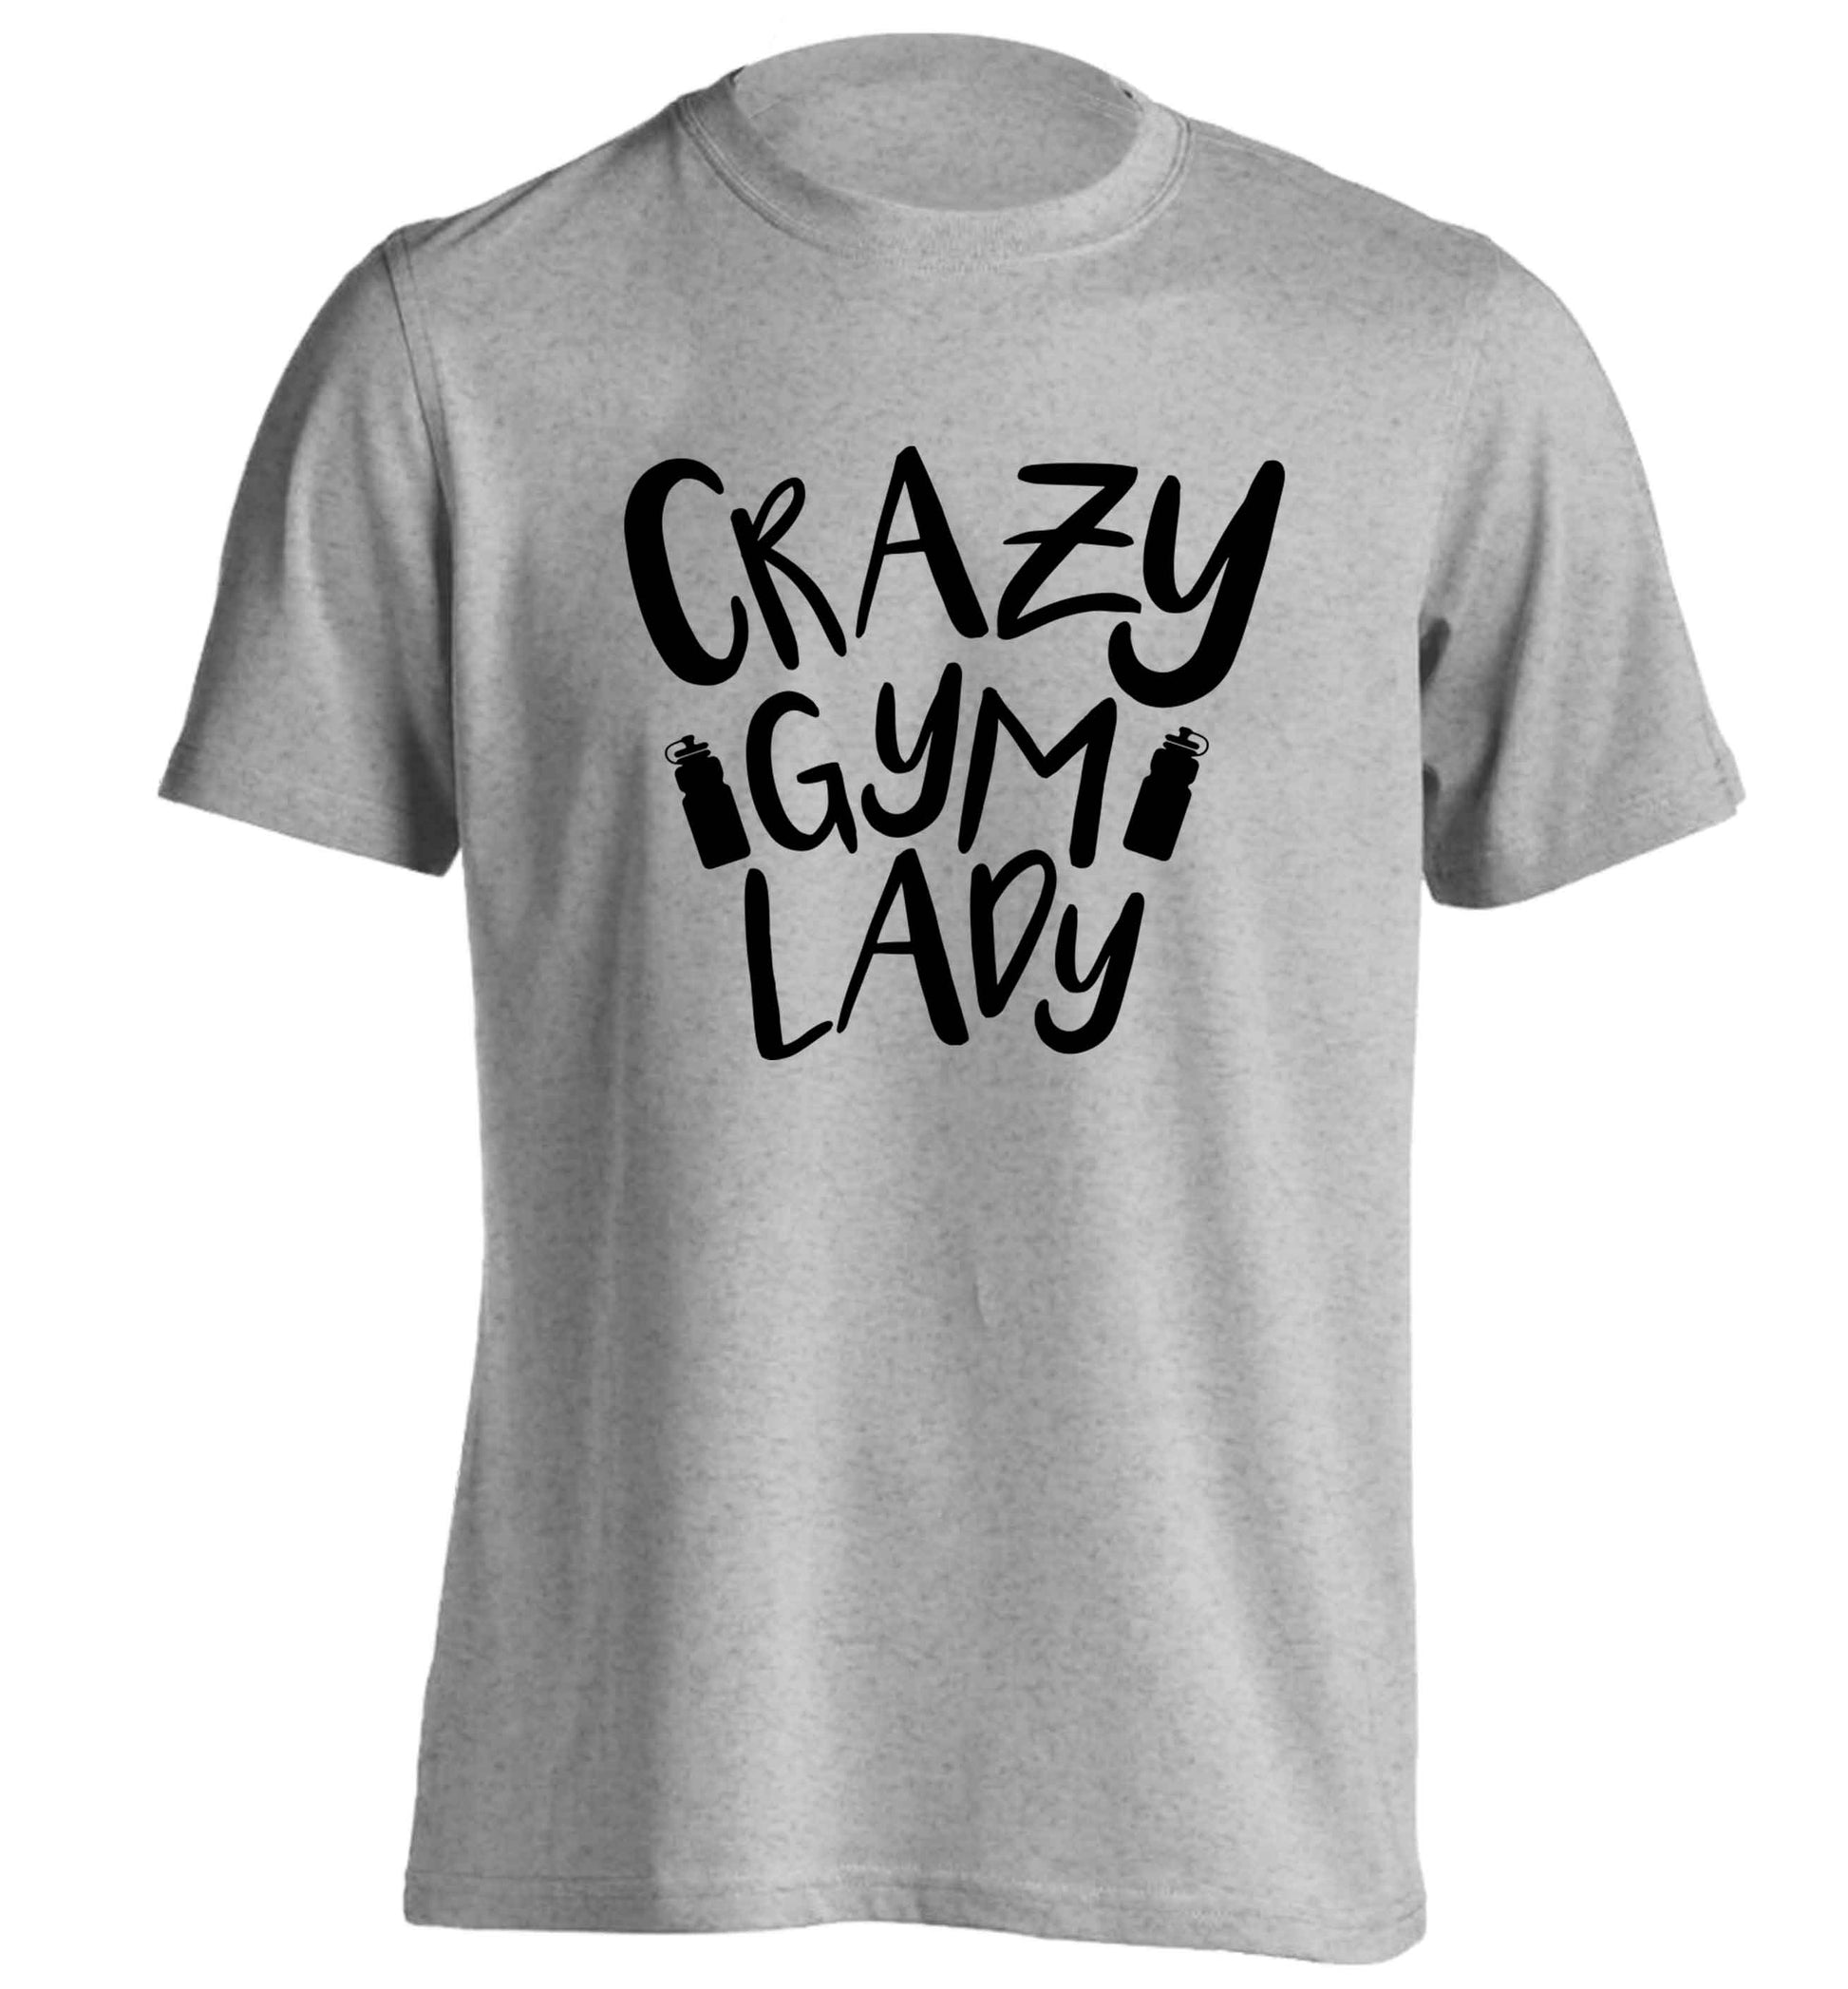 Crazy gym lady adults unisex grey Tshirt 2XL